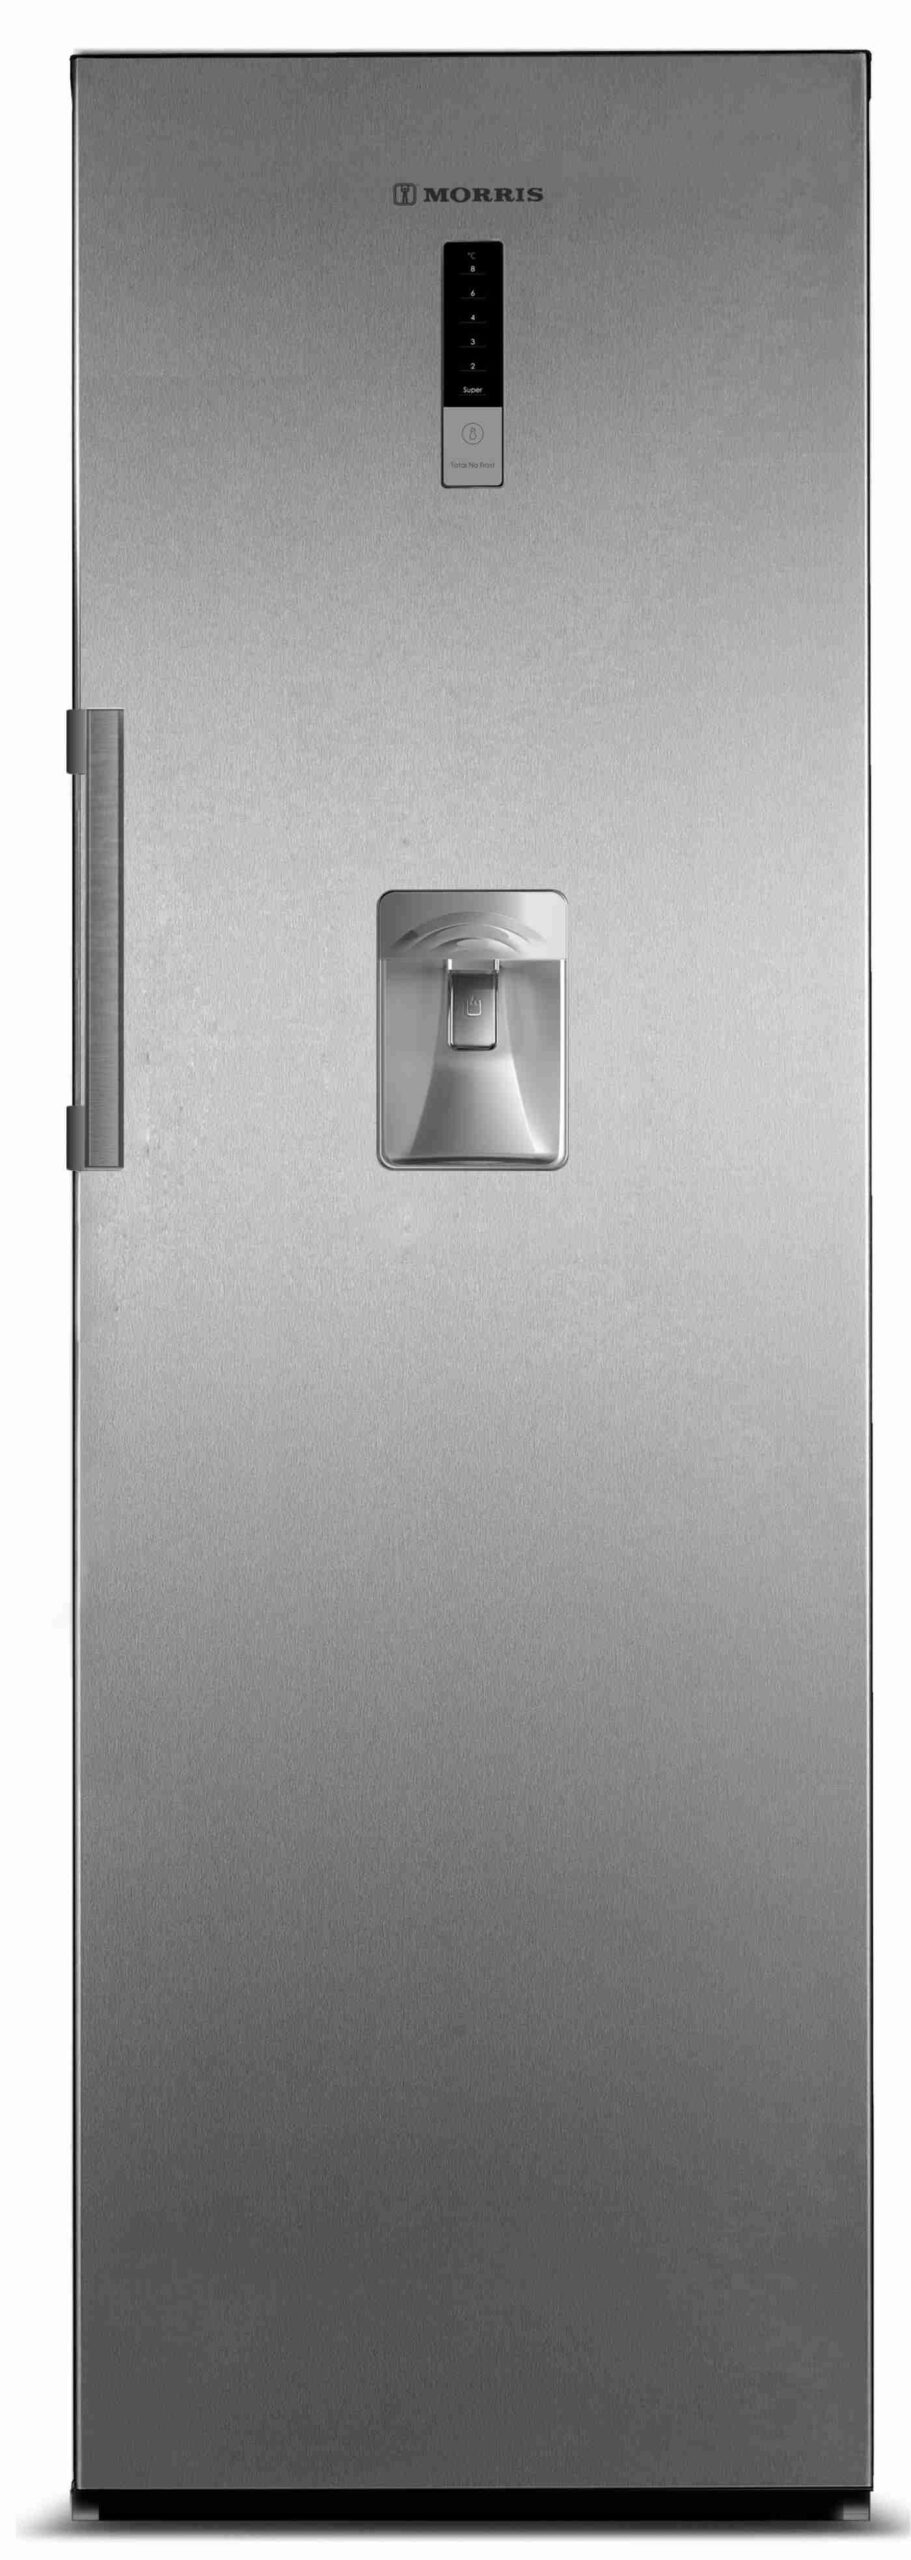 MORRIS S71351NFL SINGLE DOOR REFRIGERATOR INOX LOOK